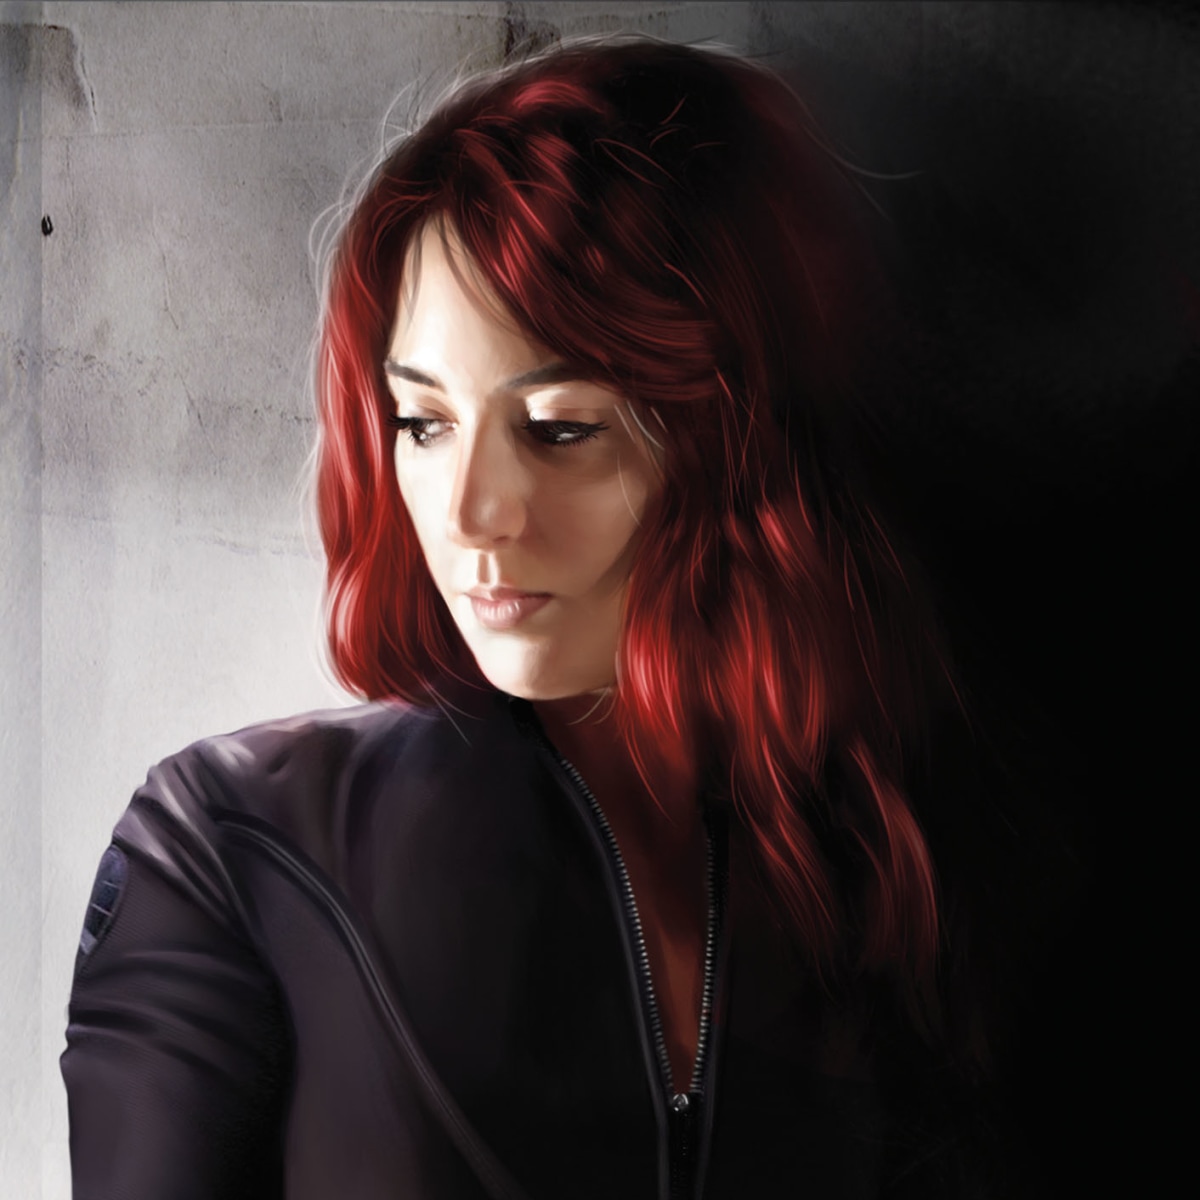 Black Widow Red Hair Digital Art Wallpapers